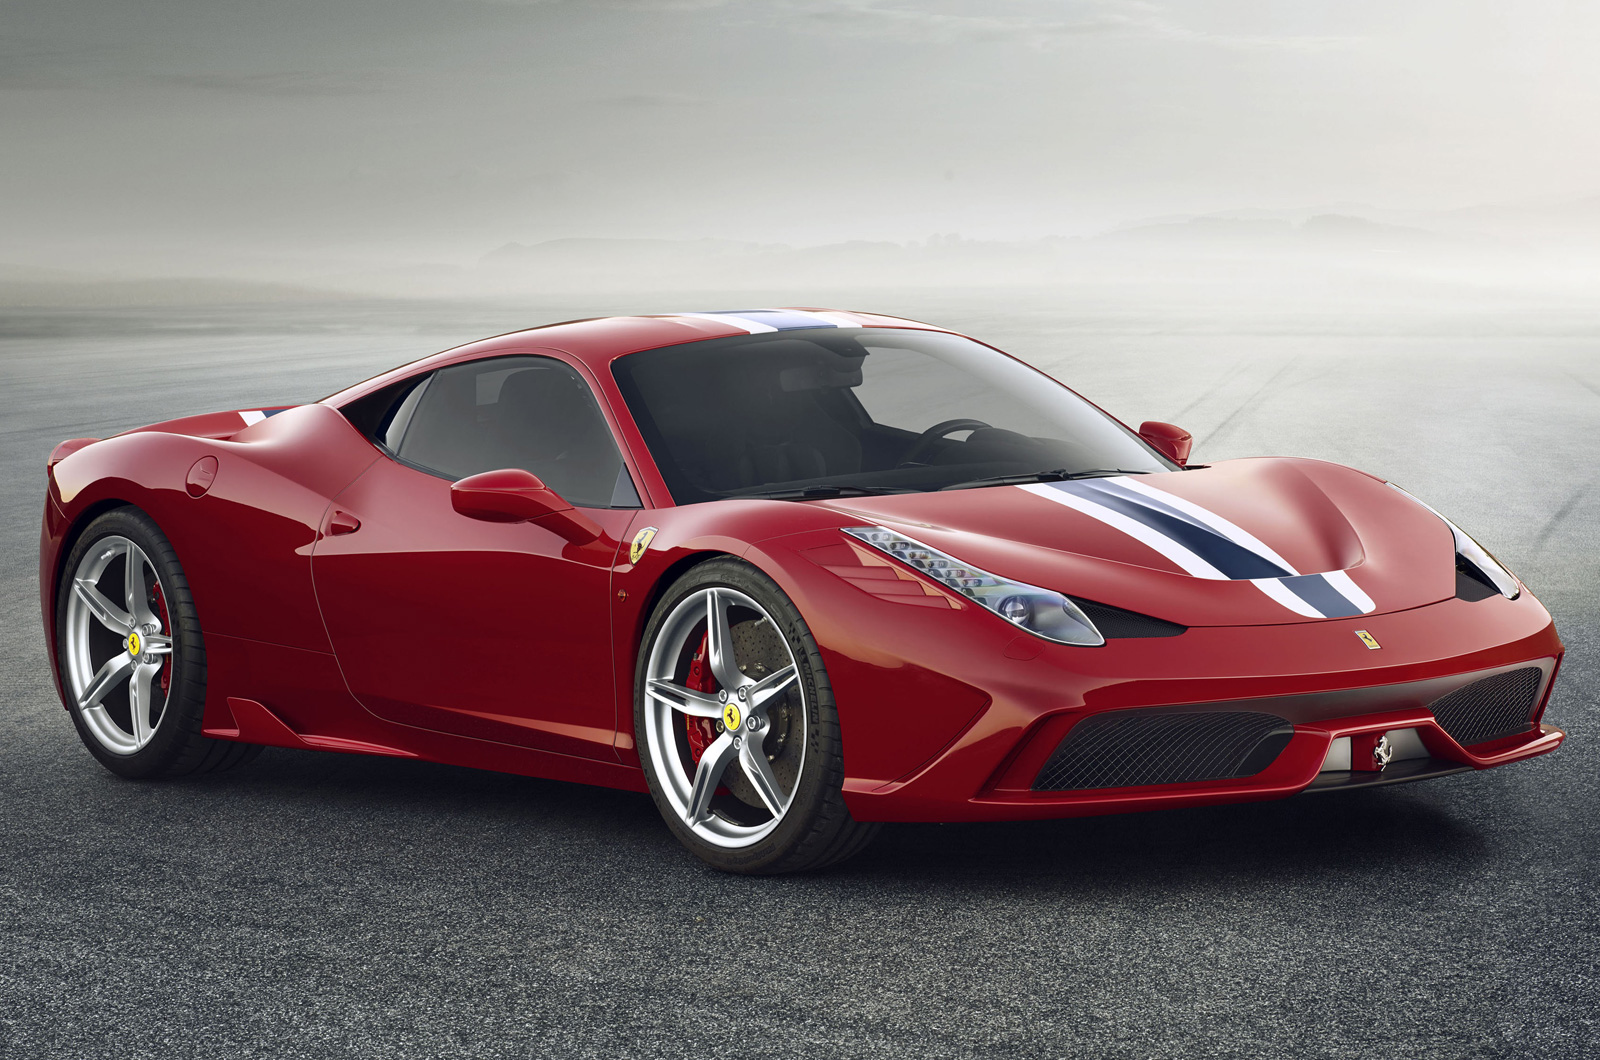 Подробнее о статье Облегченный суперкар Ferrari 458 Speciale